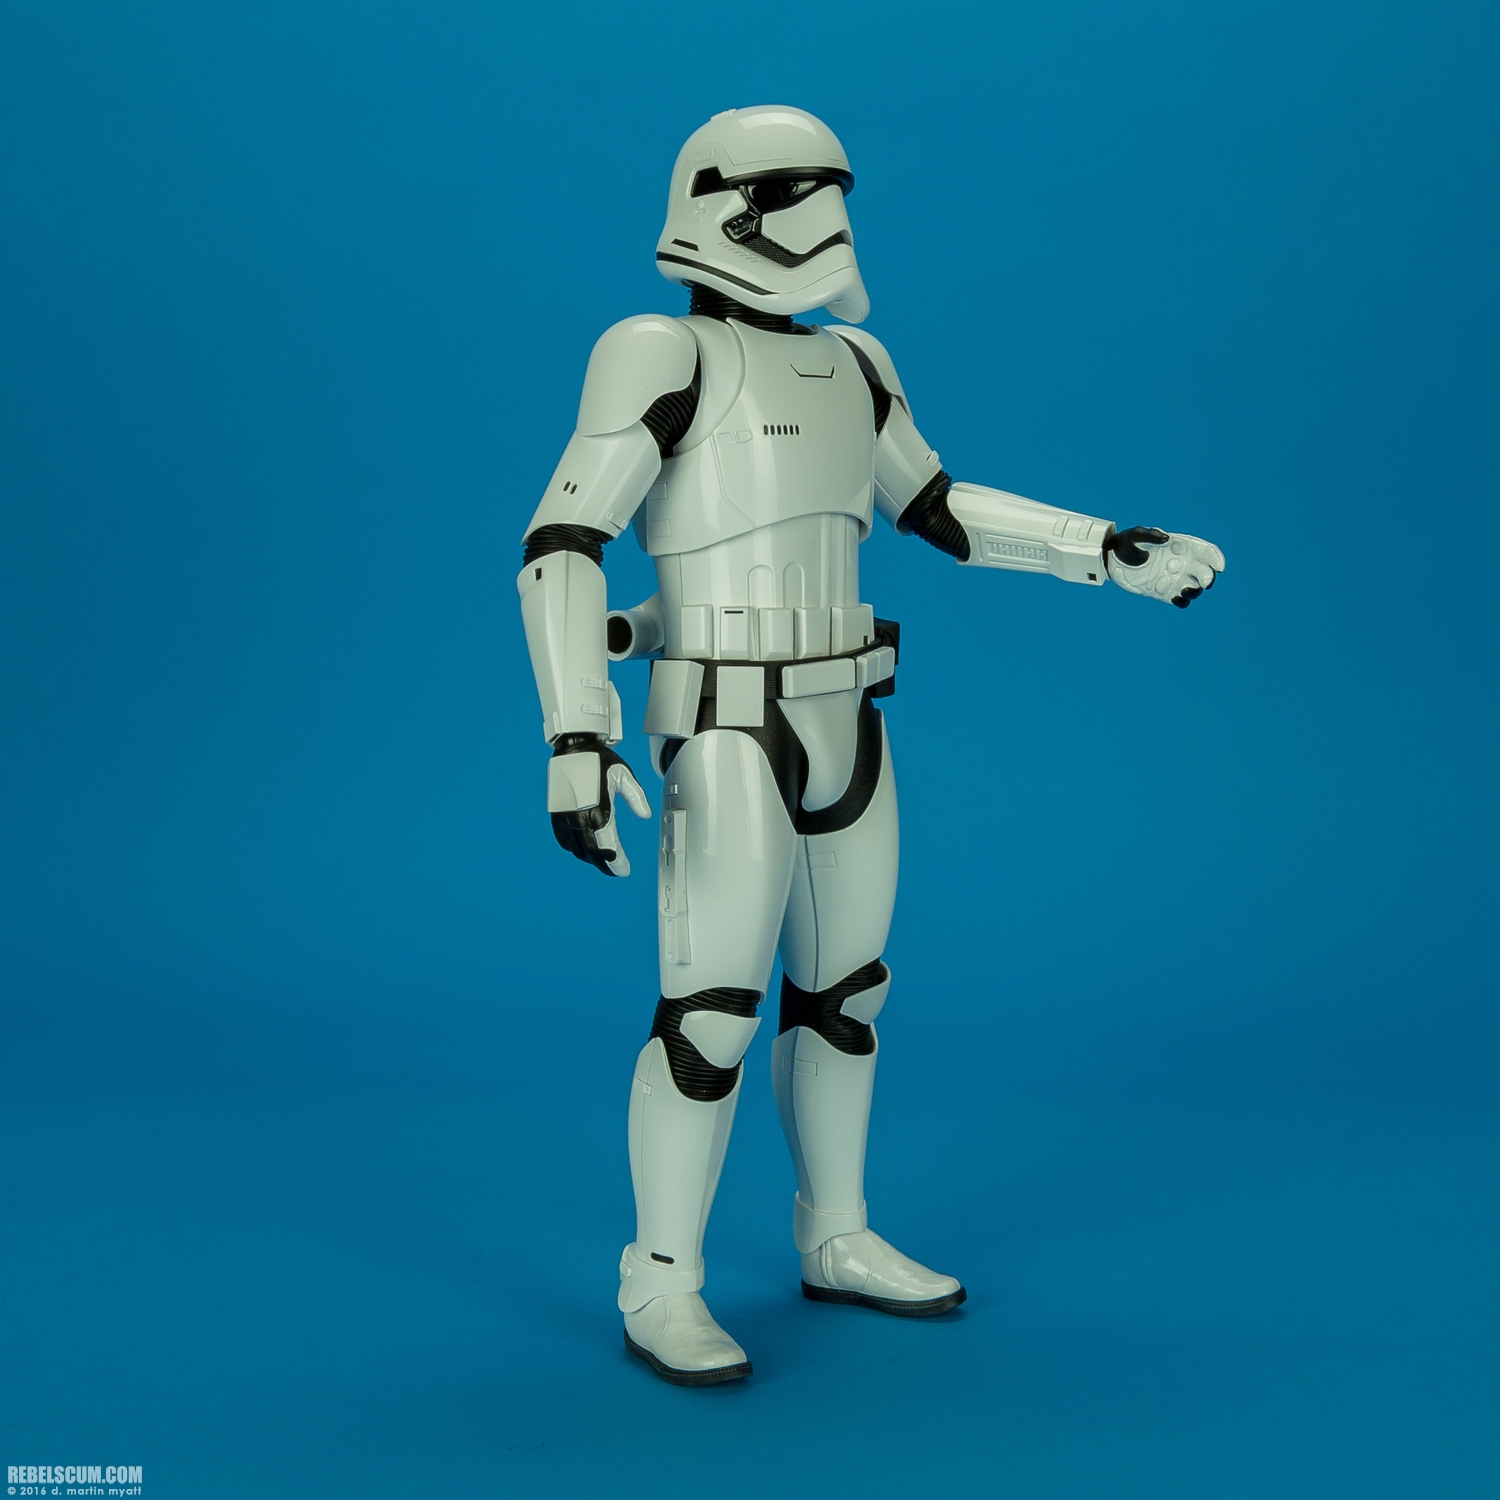 MMS346-Finn-First-Order-Riot-control-Stormtrooper-Hot-Toys-028.jpg